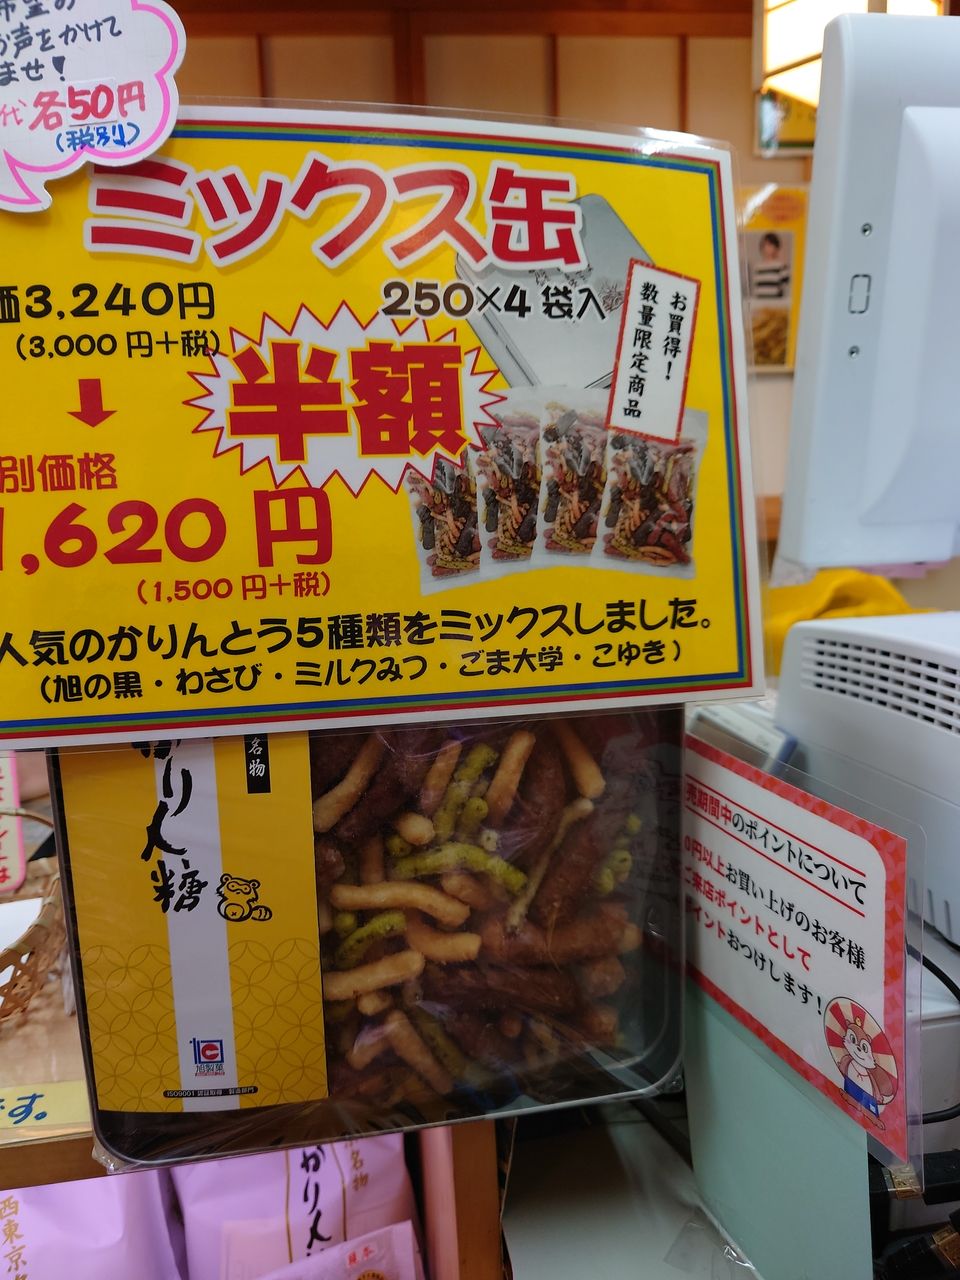 今年もお歳暮用に西東京名物【旭のかりん糖】が売り出されています